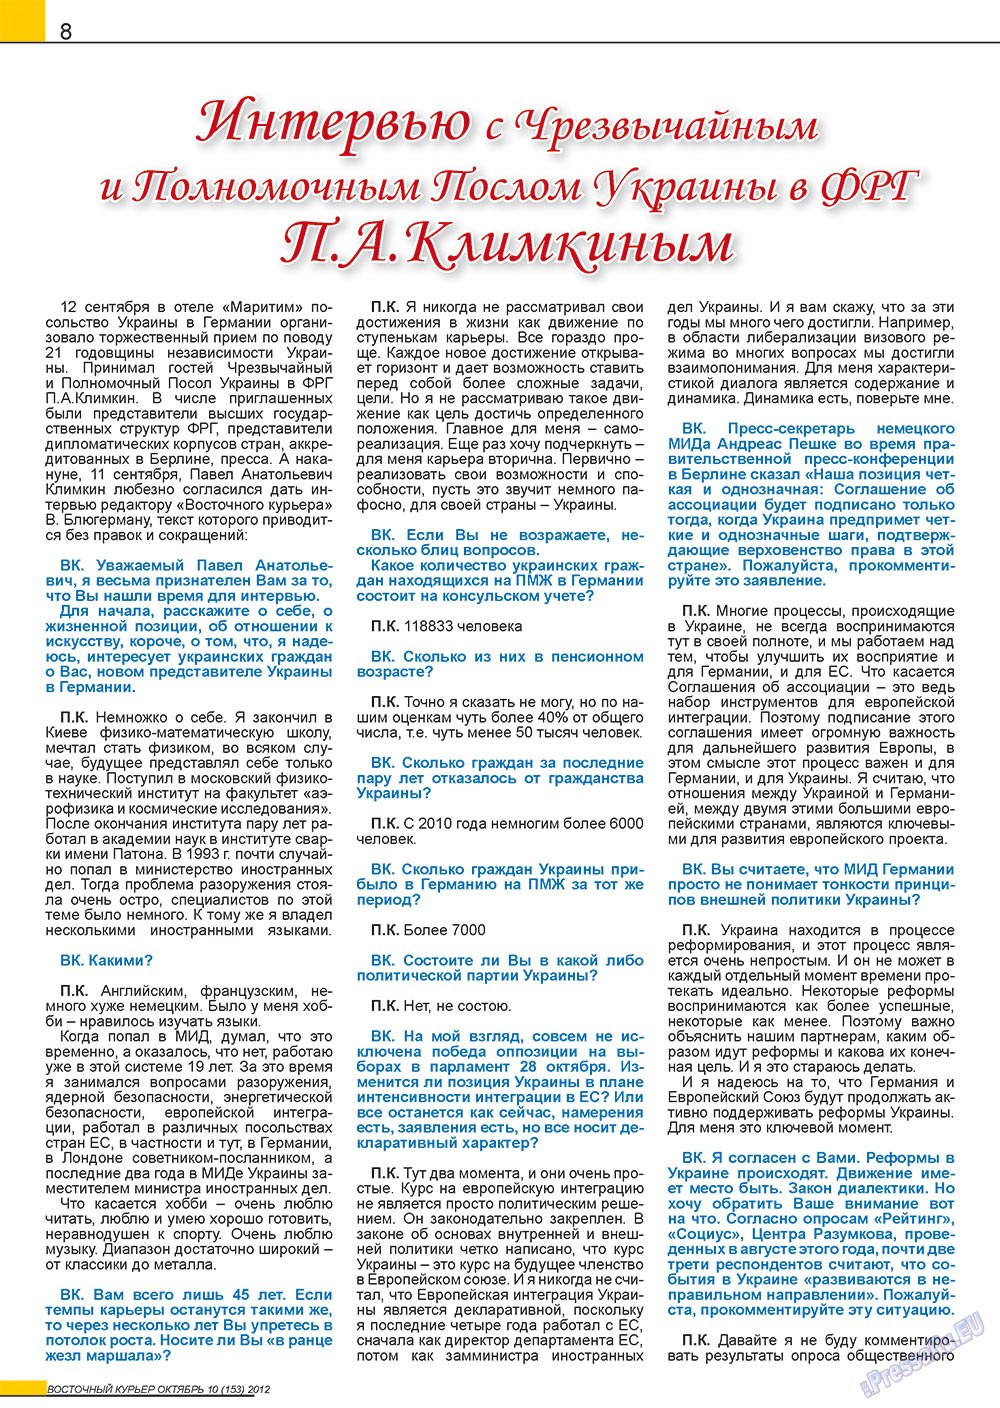 Восточный курьер, журнал. 2012 №10 стр.8